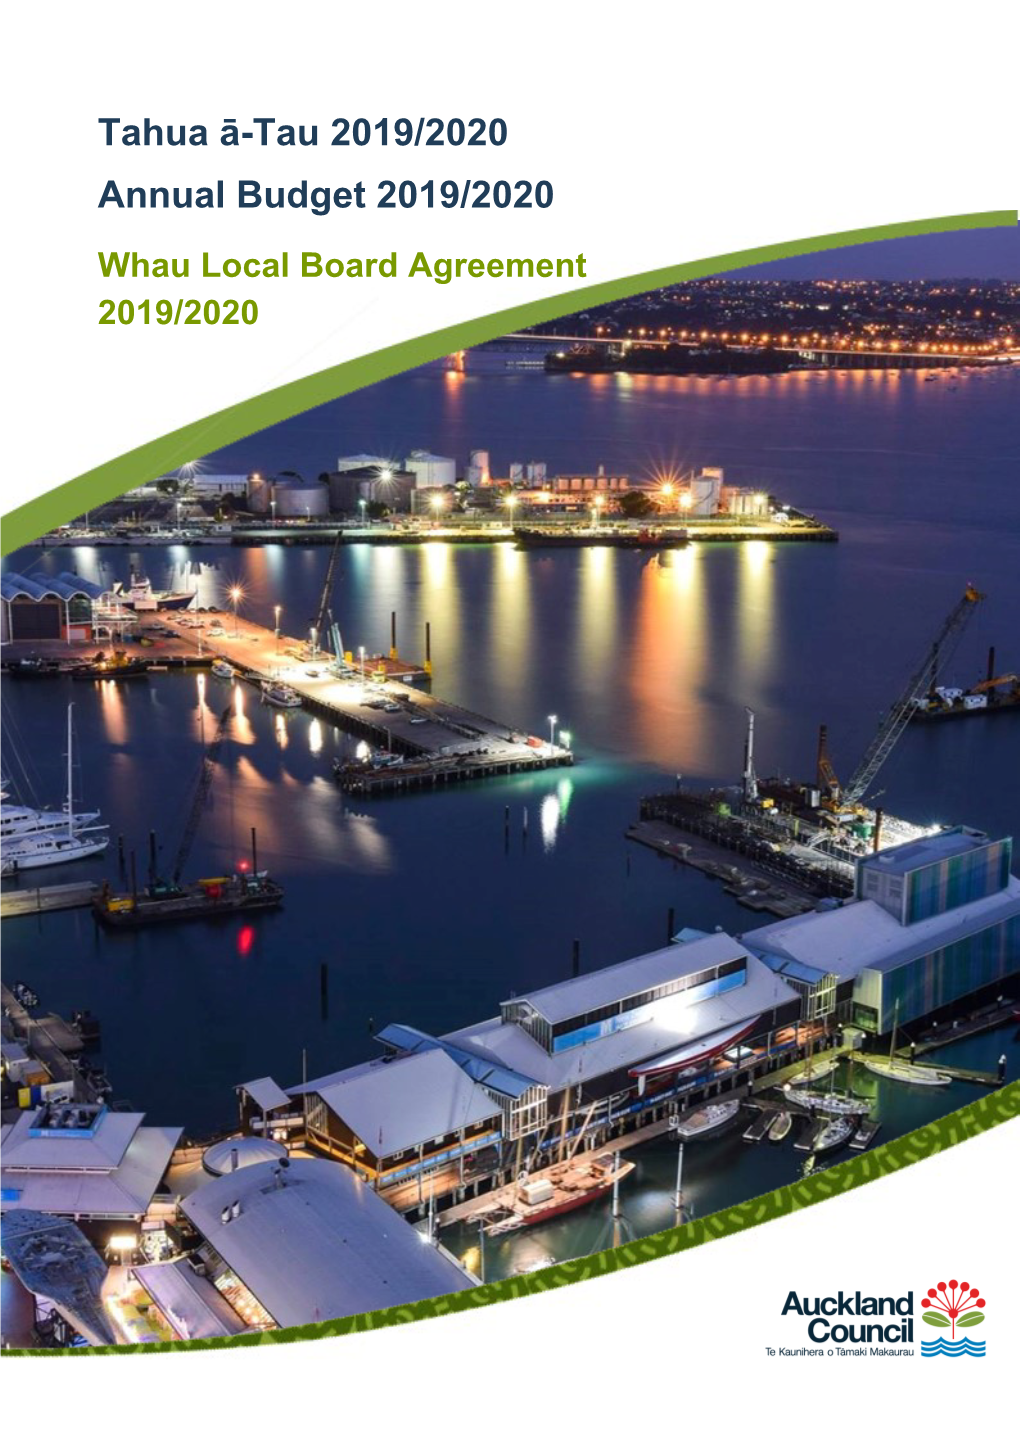 Whau Local Board Agreement 2019/2020